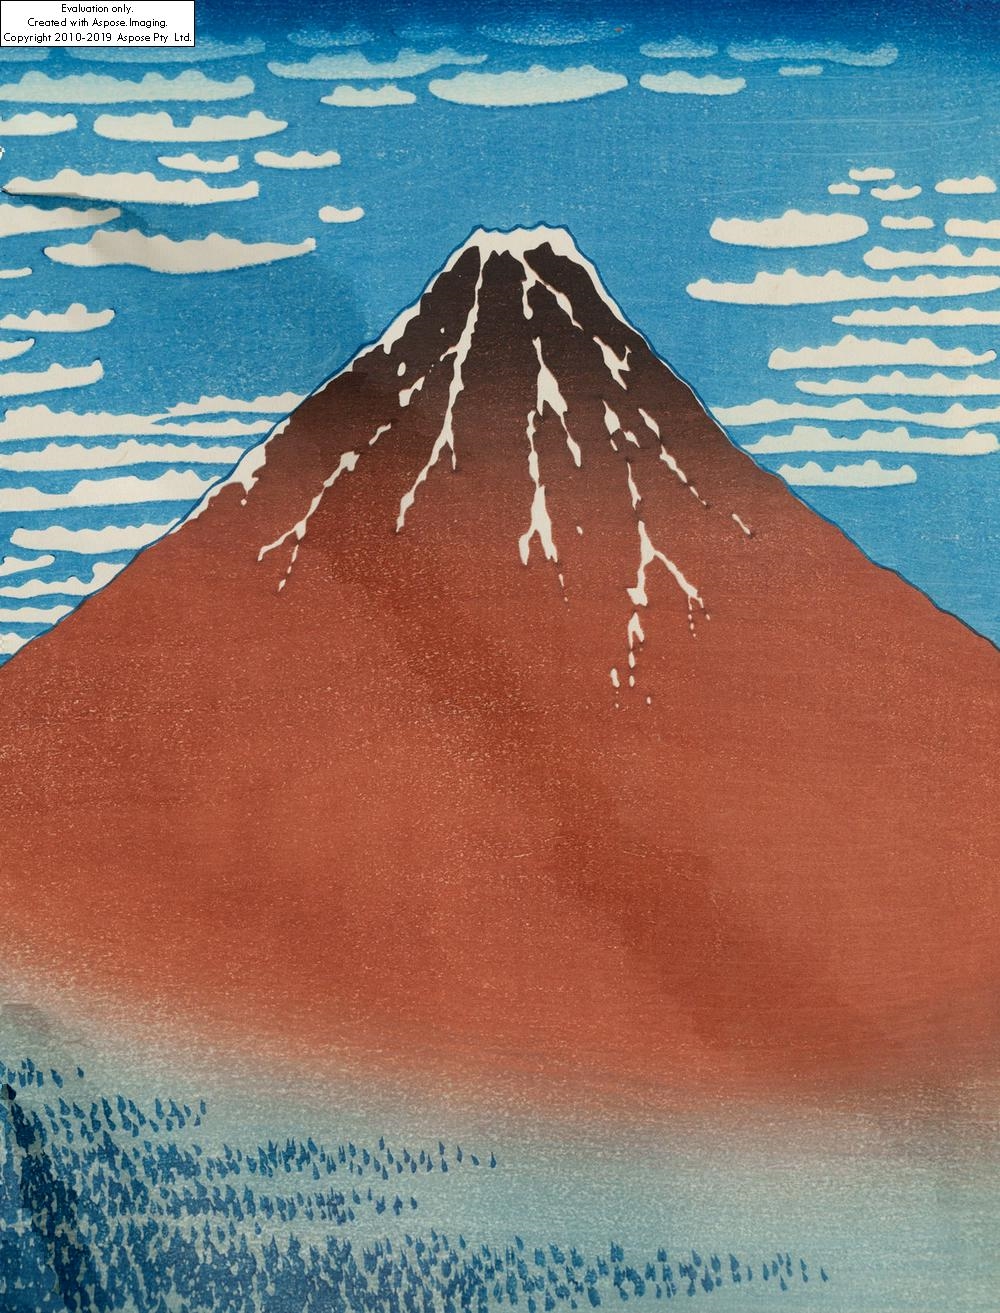 赤富士オブジェ 大 Red Mt.Fuji Art object L - www.yanbunh.com